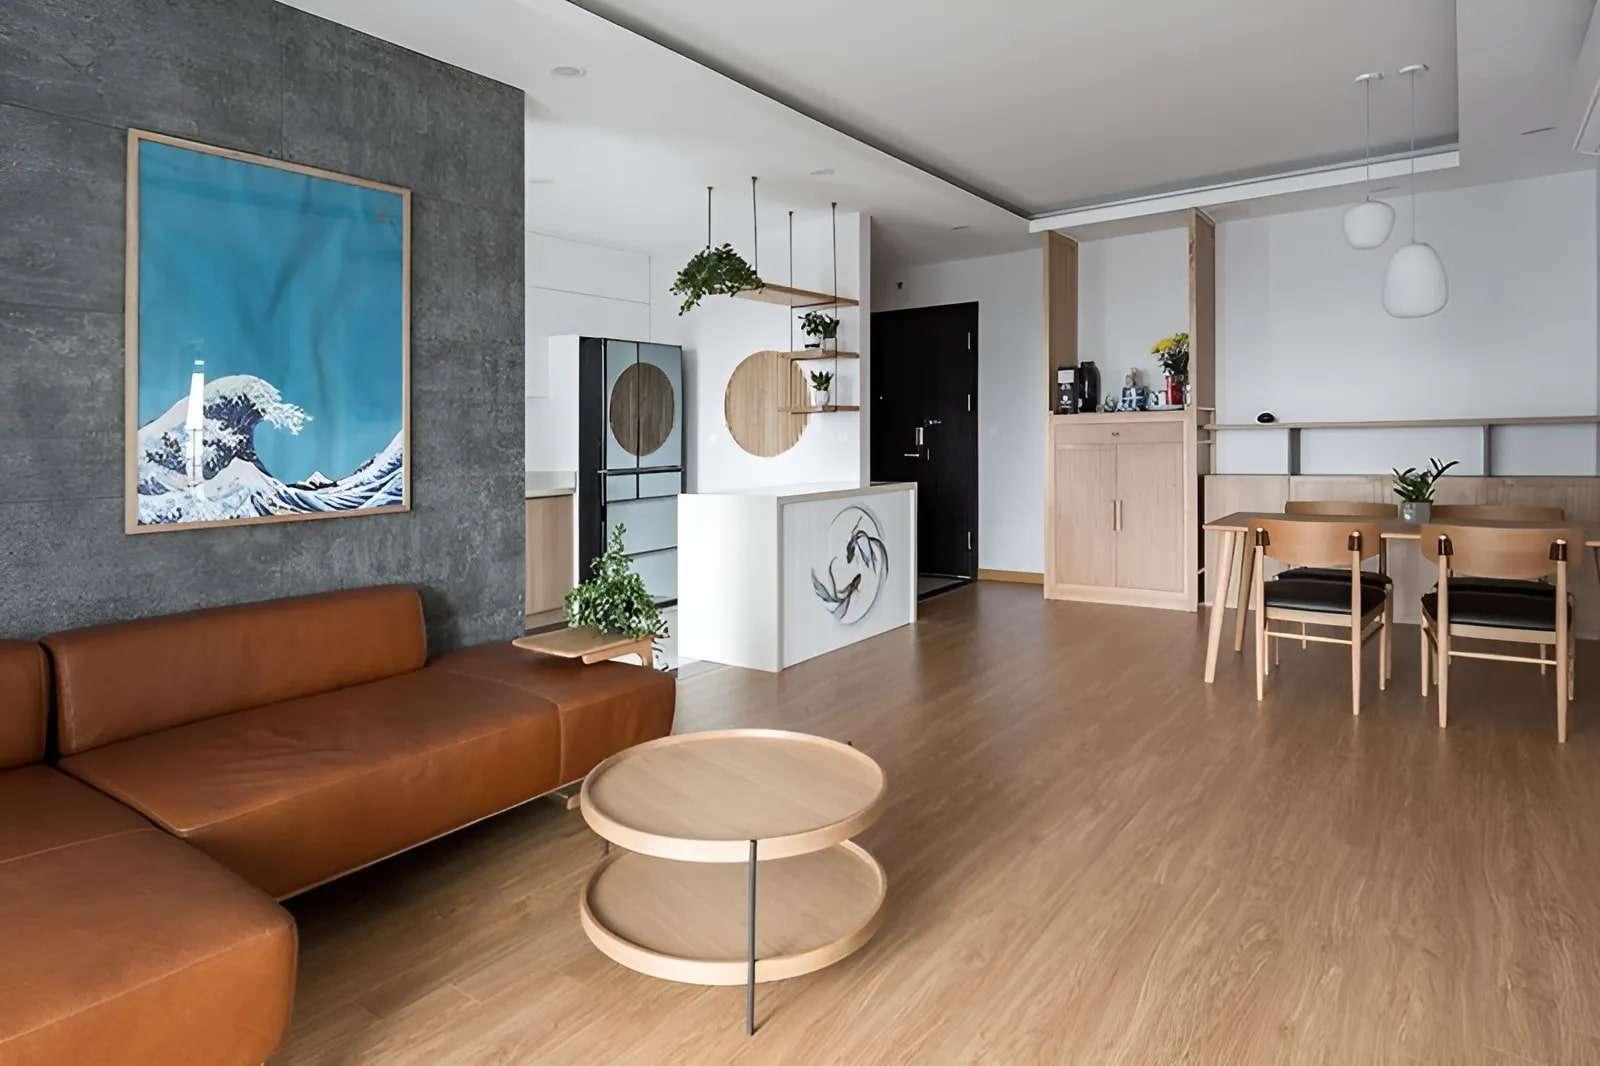 Nội thất chung cư tối giản mang đến không gian sống thoải mái và gọn gàng